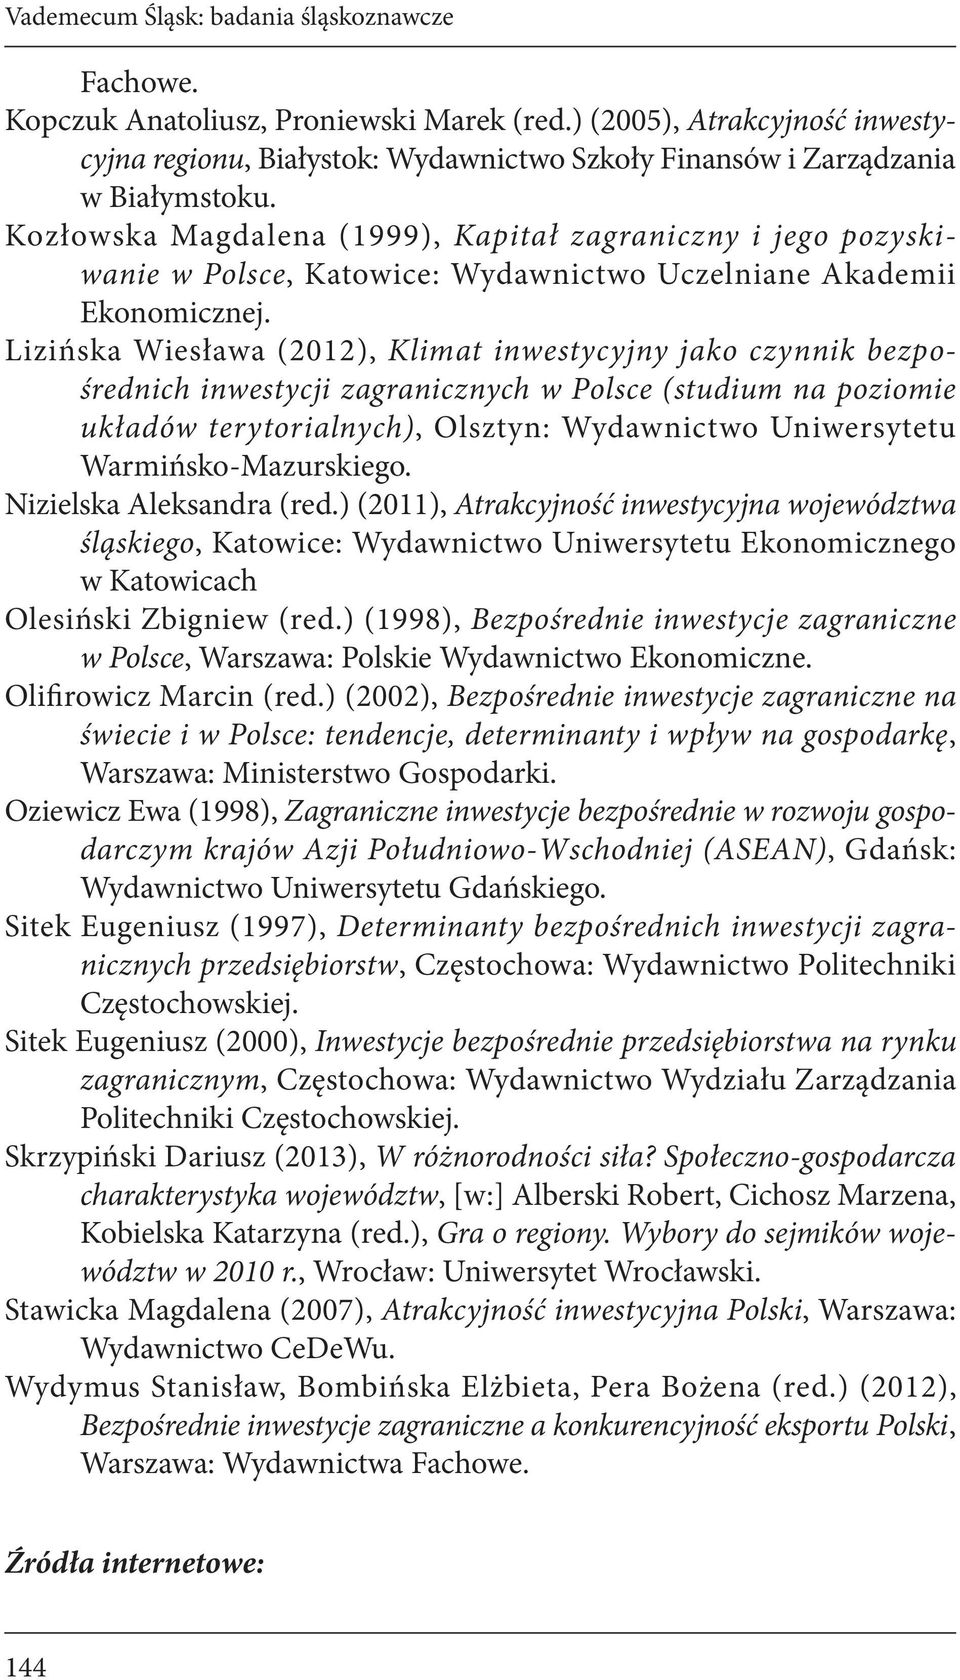 Kozłowska Magdalena (1999), Kapitał zagraniczny i jego pozyskiwanie w Polsce, Katowice: Wydawnictwo Uczelniane Akademii Ekonomicznej.